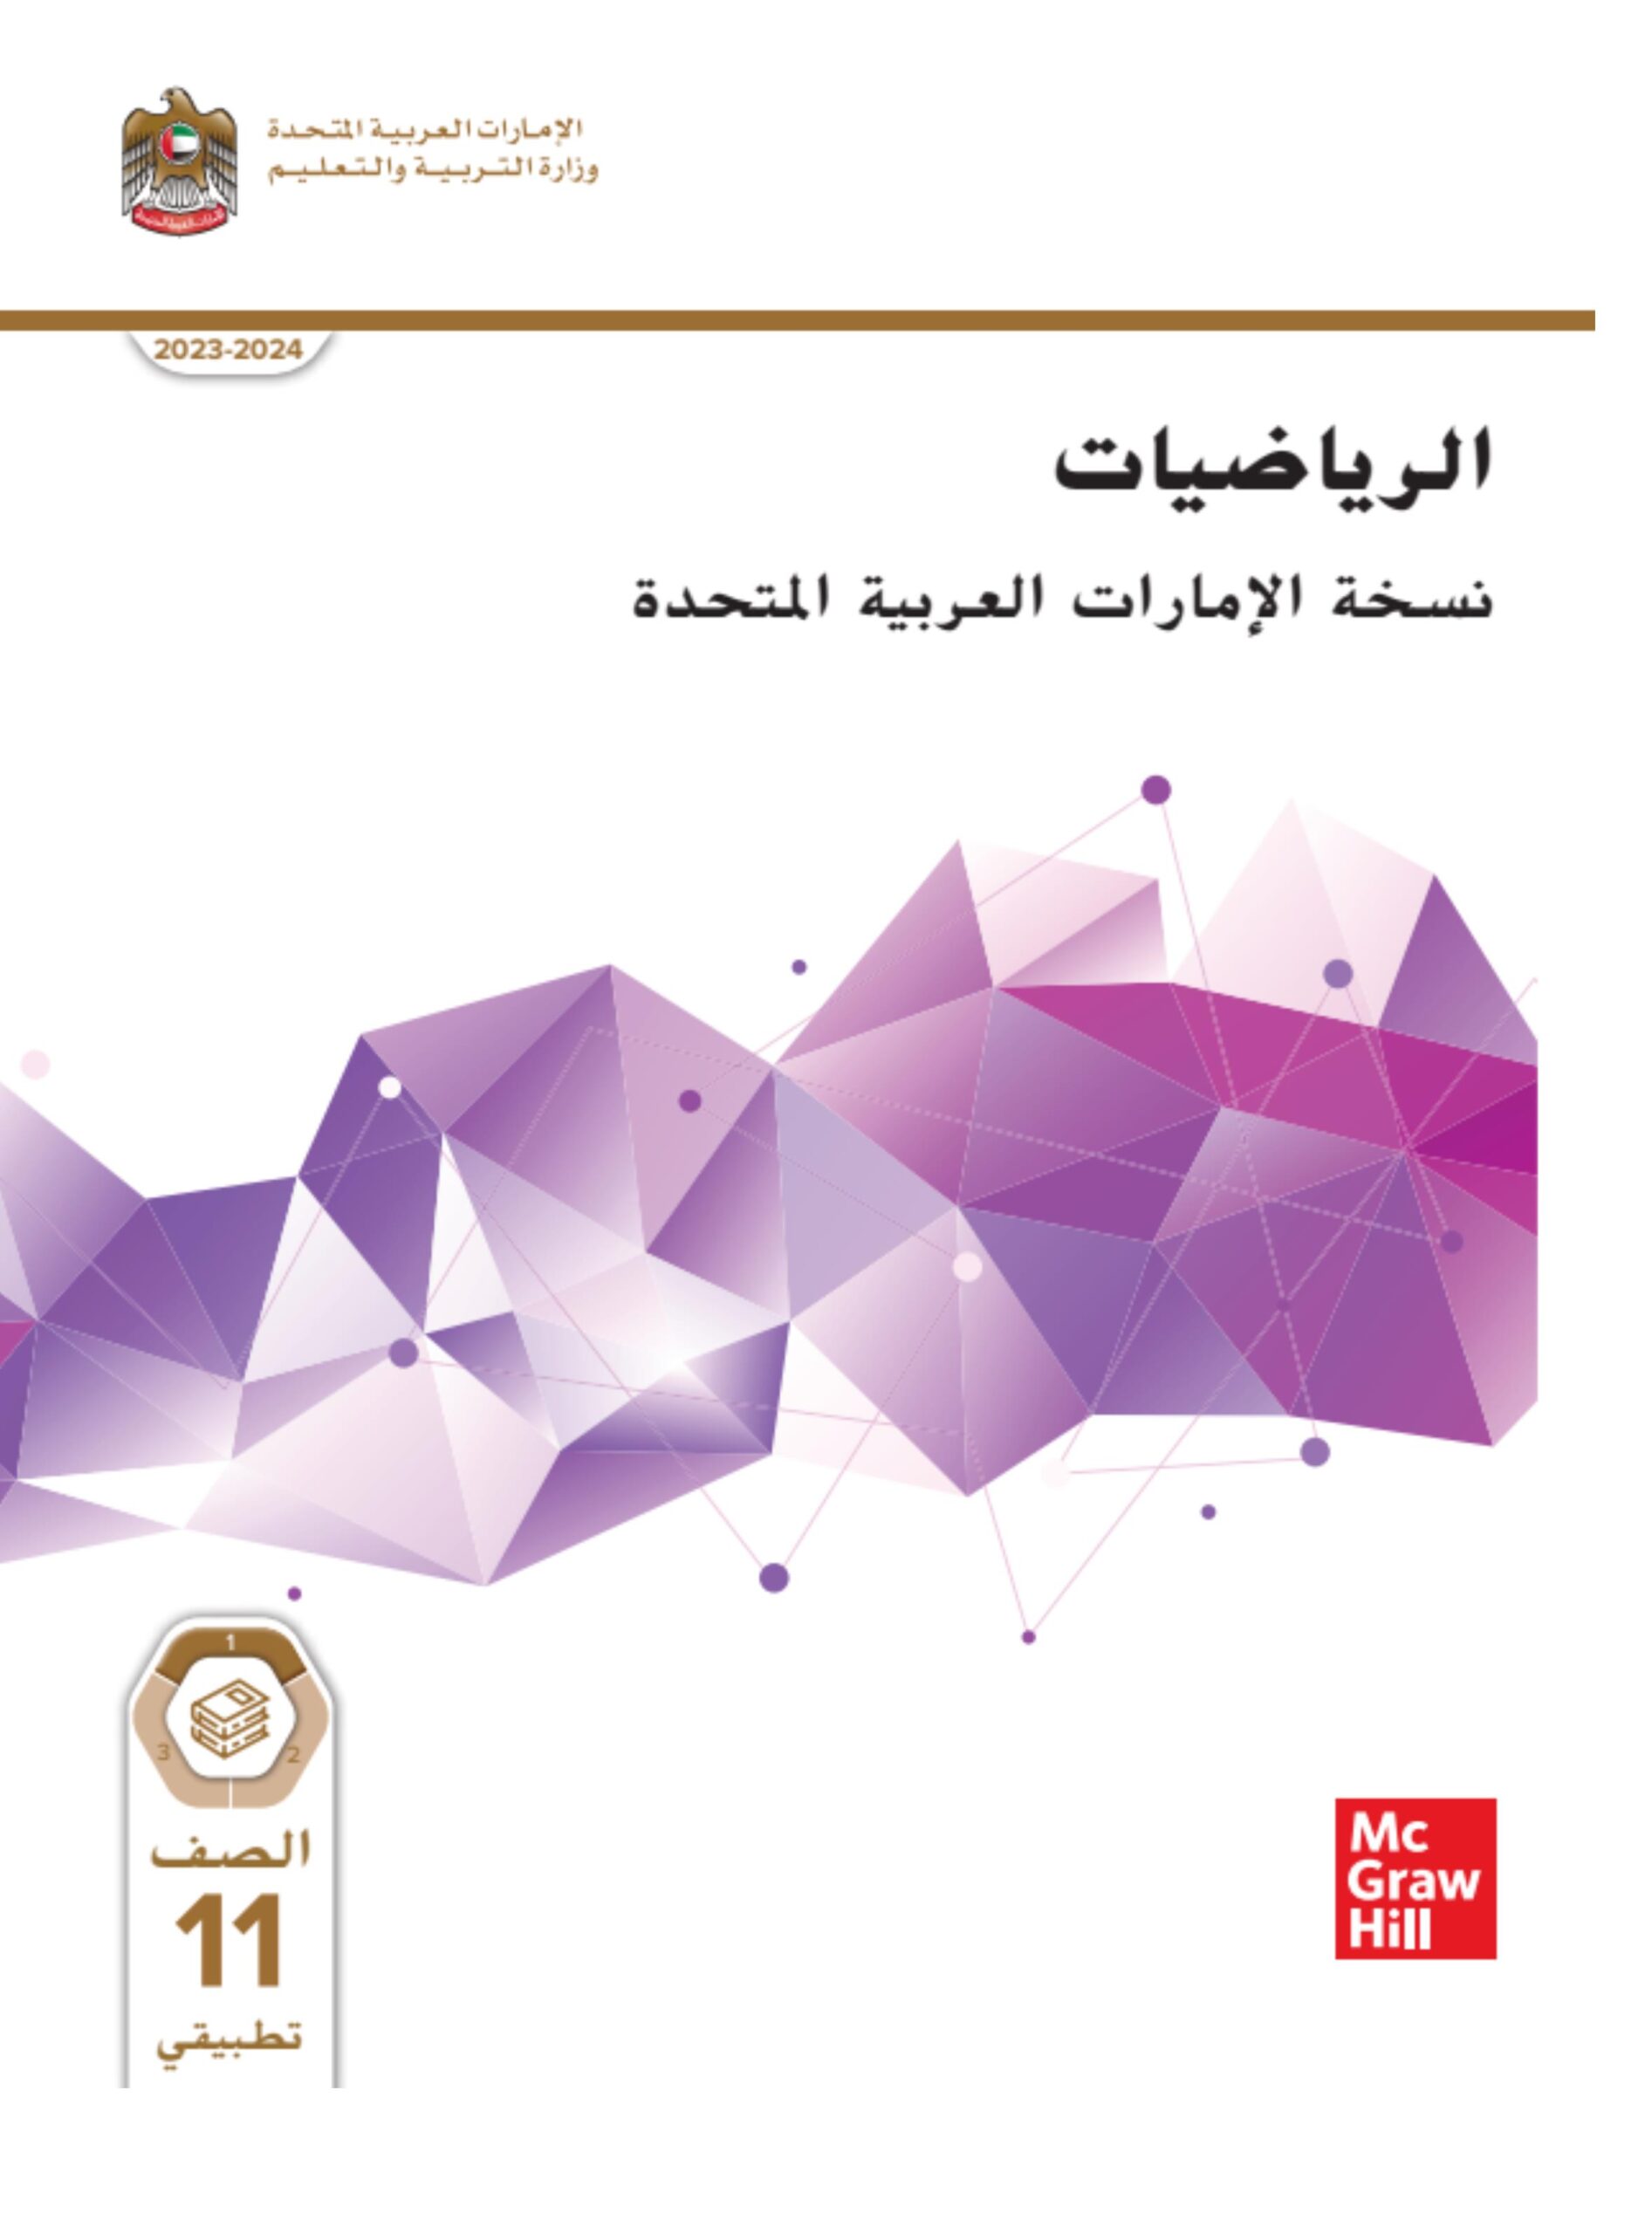 كتاب الطالب الرياضيات المتكاملة الصف العاشر التطبيقي الفصل الدراسي الأول 2023-2024 نسخة مصورة